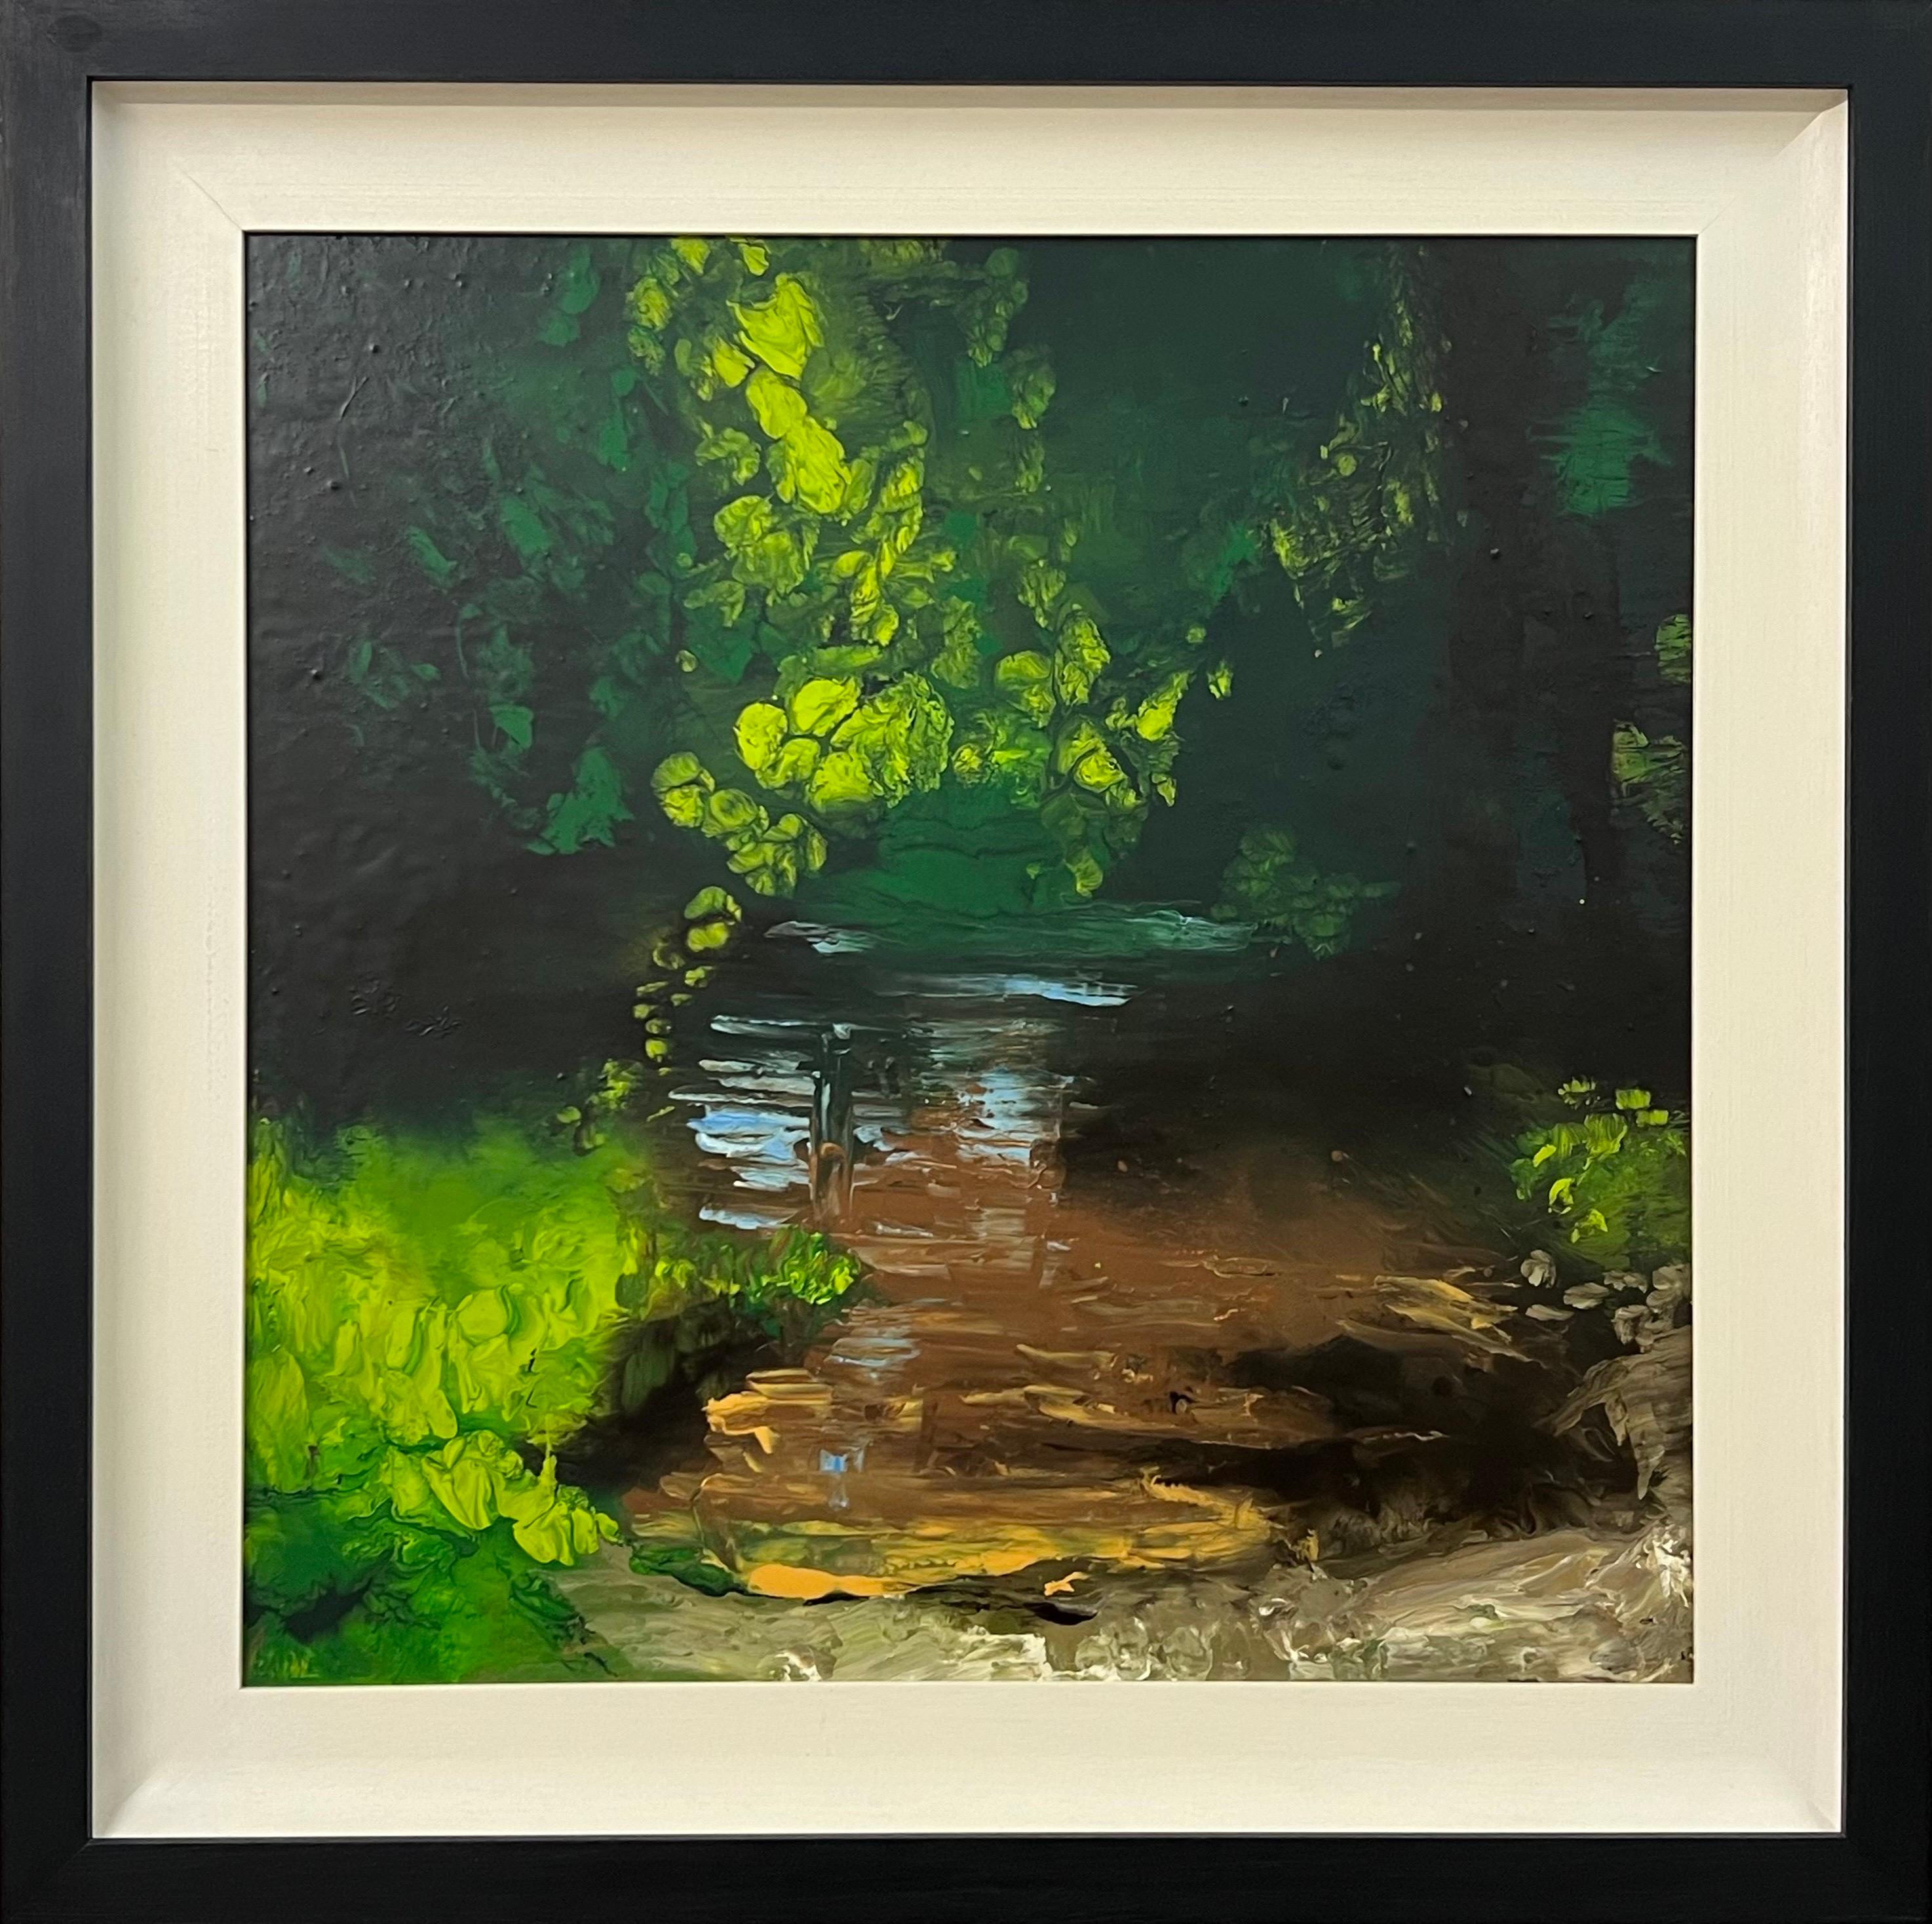 Paysage de rivière anglais impressionniste, peinture à l'huile originale de l'artiste britannique - Mixed Media Art de Colin Halliday